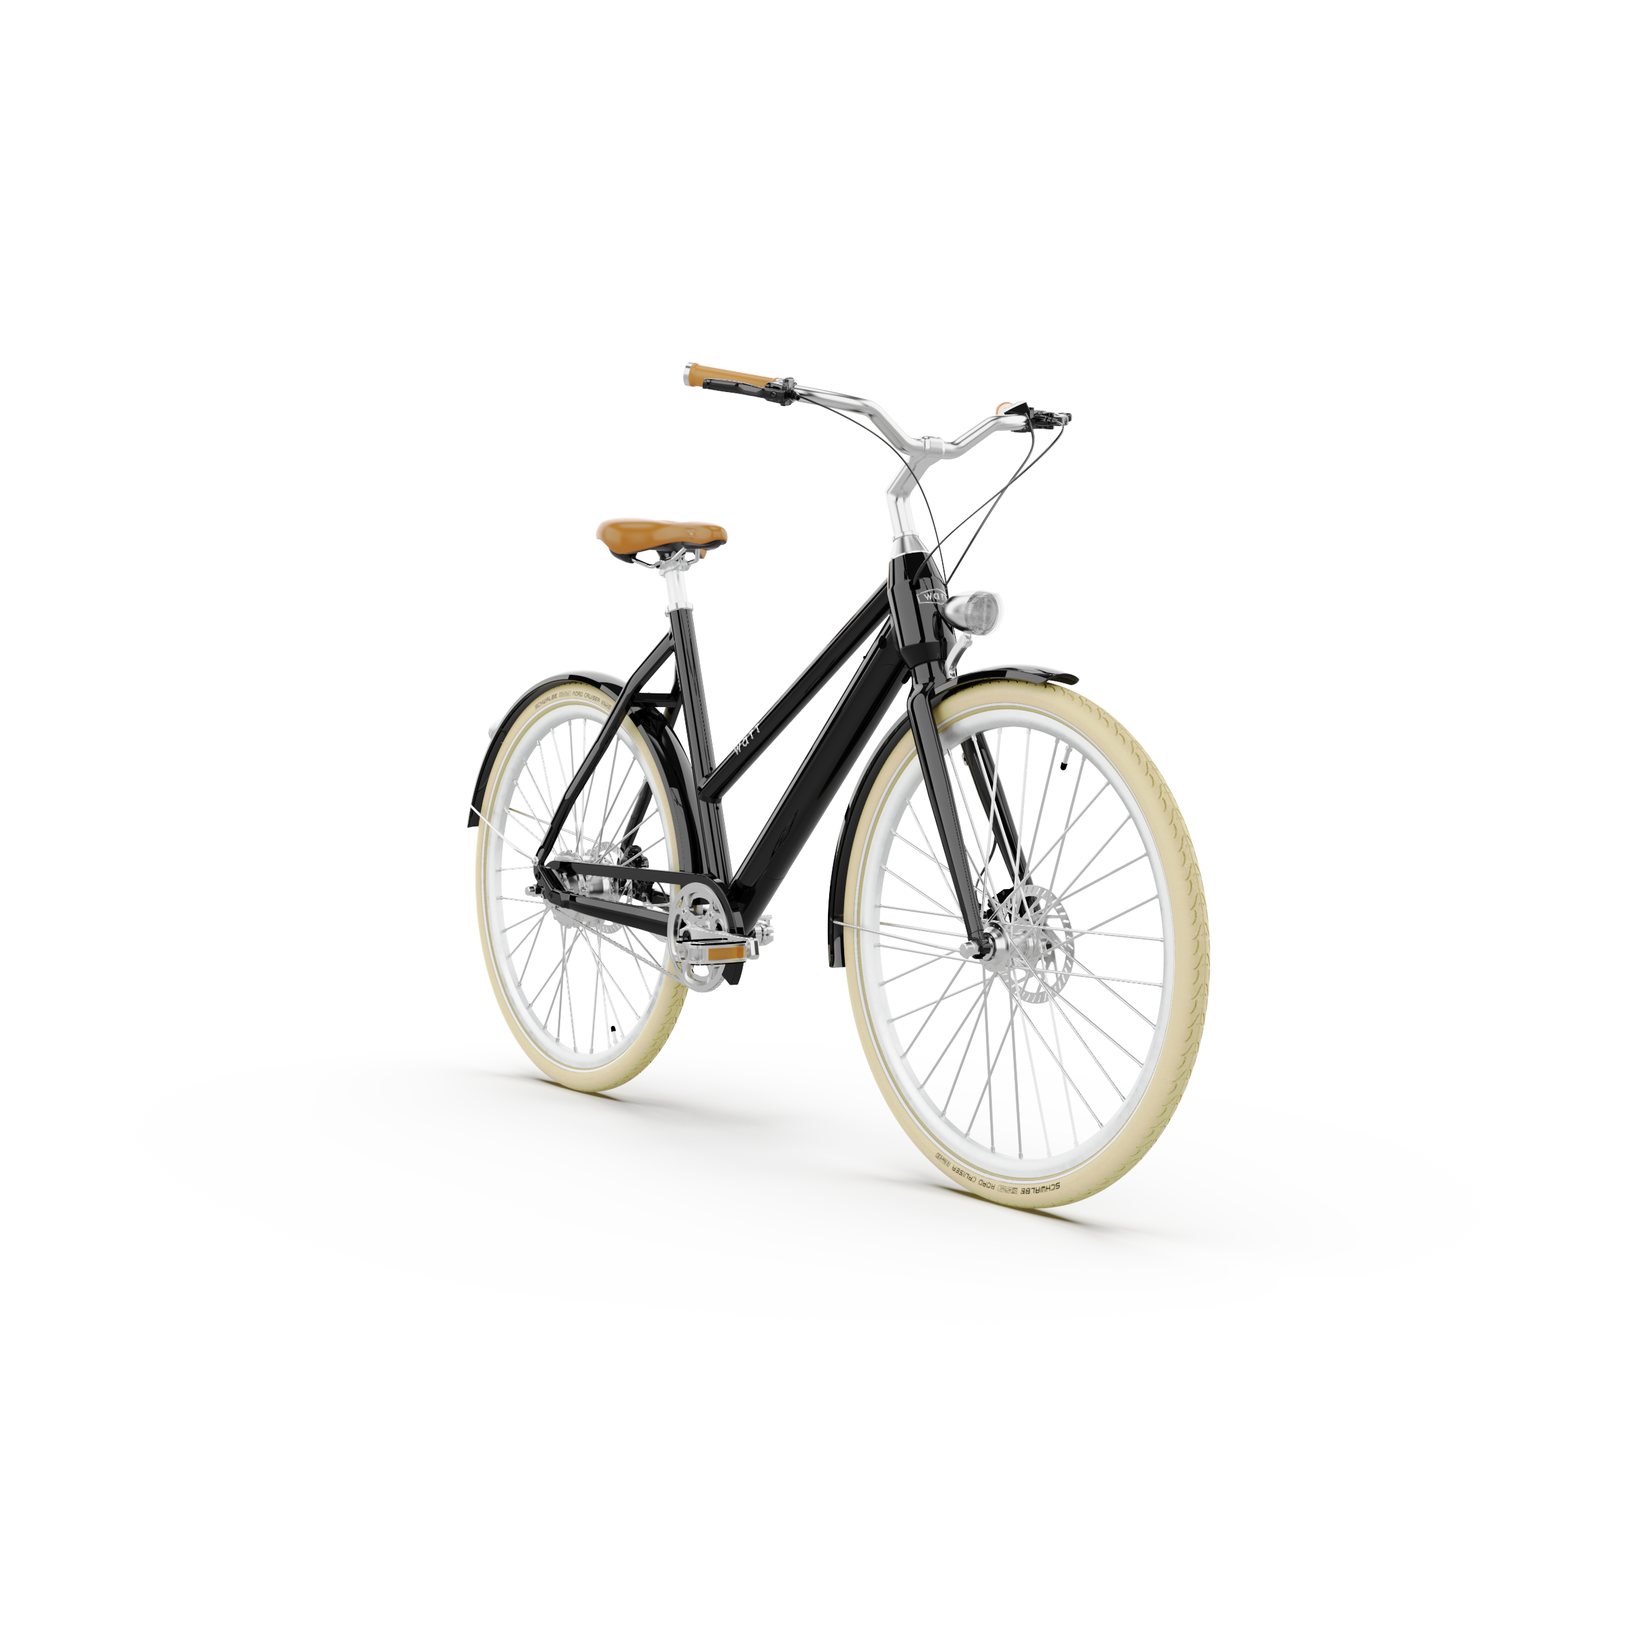 Dublin elsykkel er laget av aluminium og sykkelen veier rundt 20 kg.